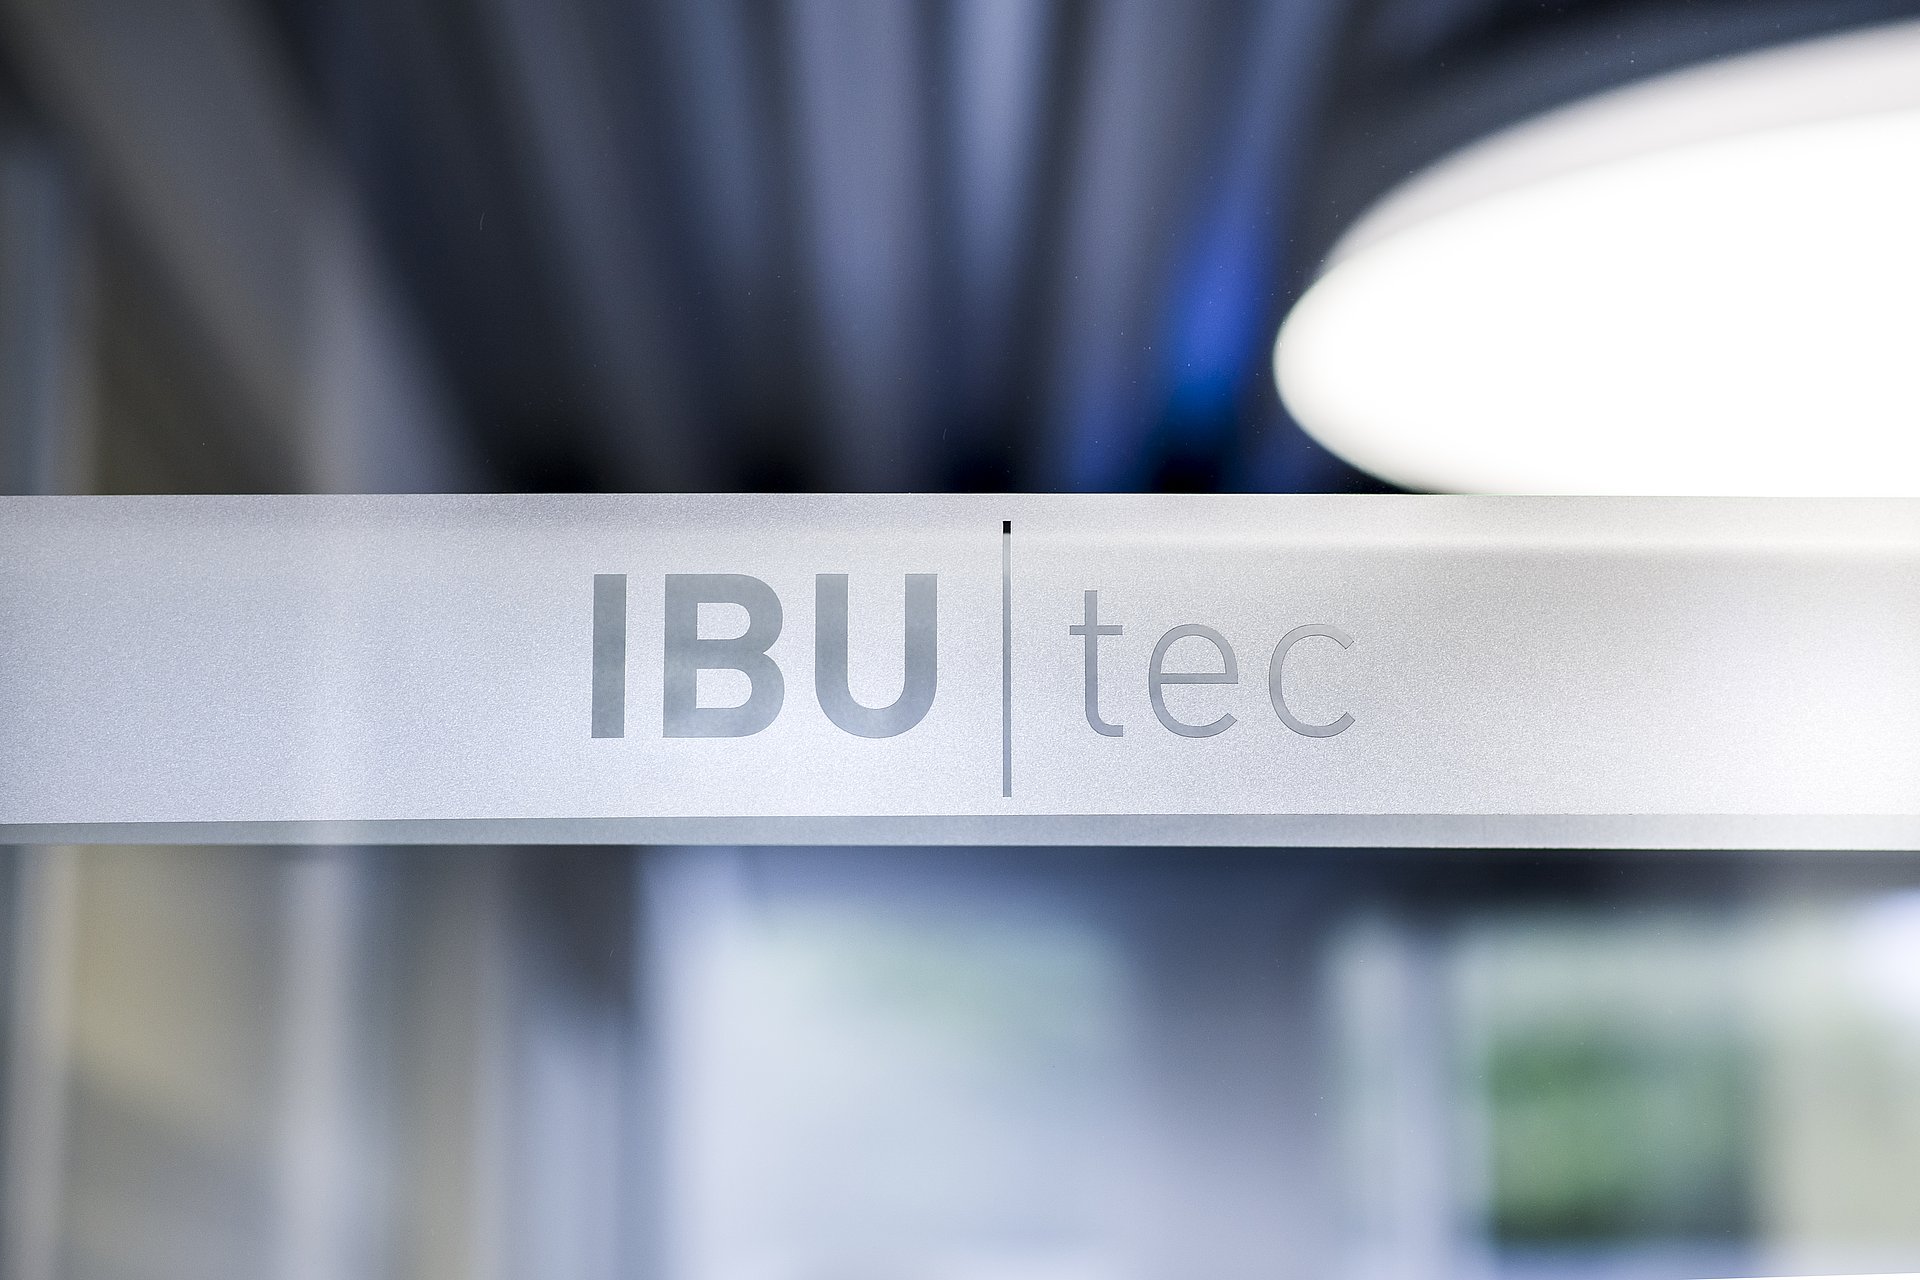 IBU-tec Logo mit künstlerischen unscharfen Lichtern im Hintergrund: blau, grau und weiß